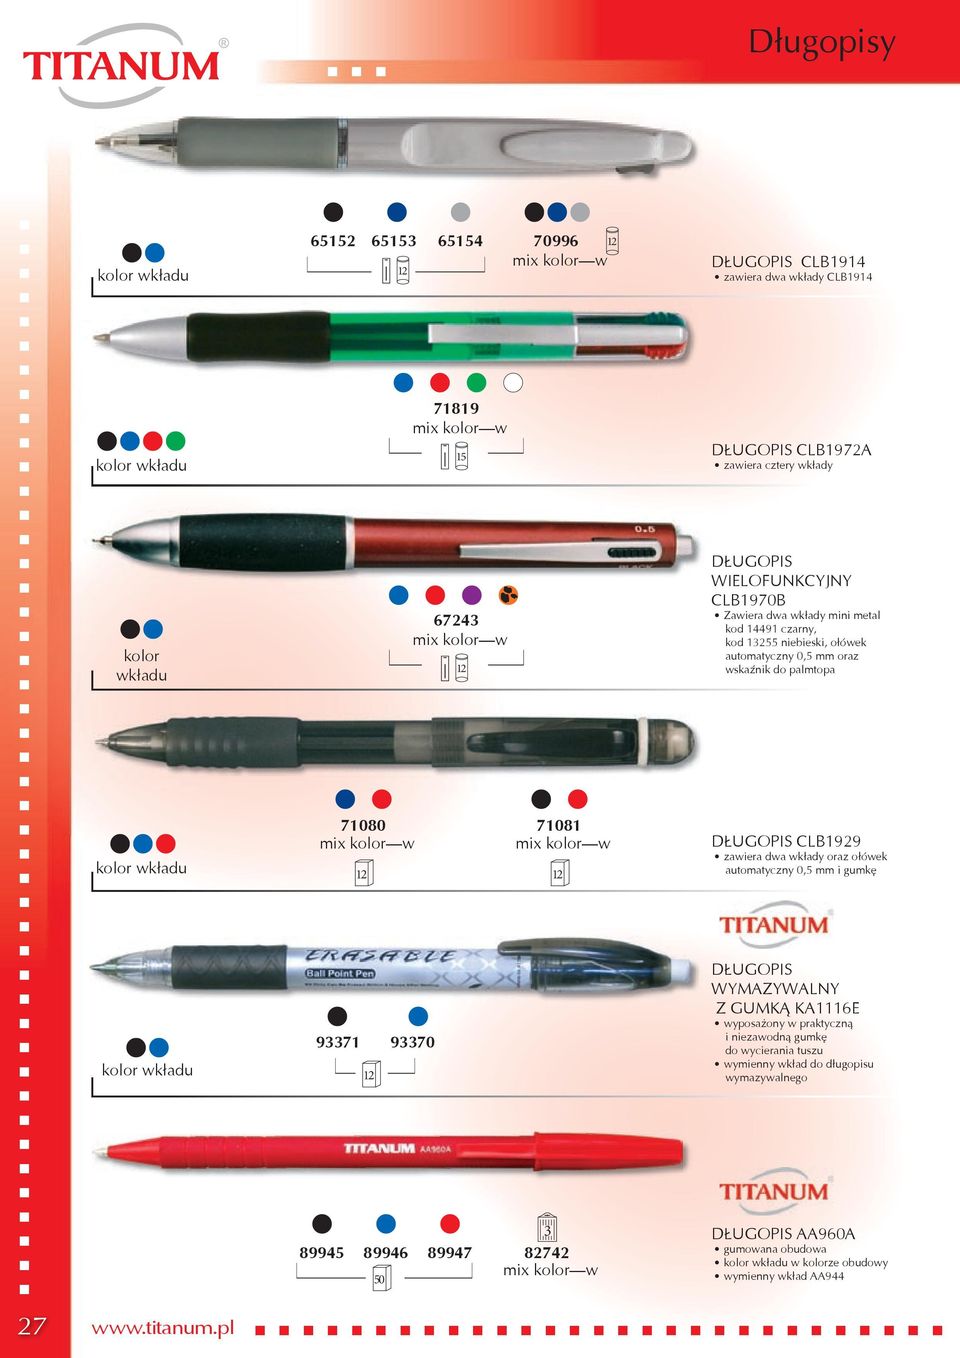 CLB1929 zawiera dwa wkłady oraz ołówek automatyczny 0,5 mm i gumkę 93371 93370 DŁUGOPIS WYMAZYWALNY Z GUMKĄ KA1116E wyposażony w praktyczną i niezawodną